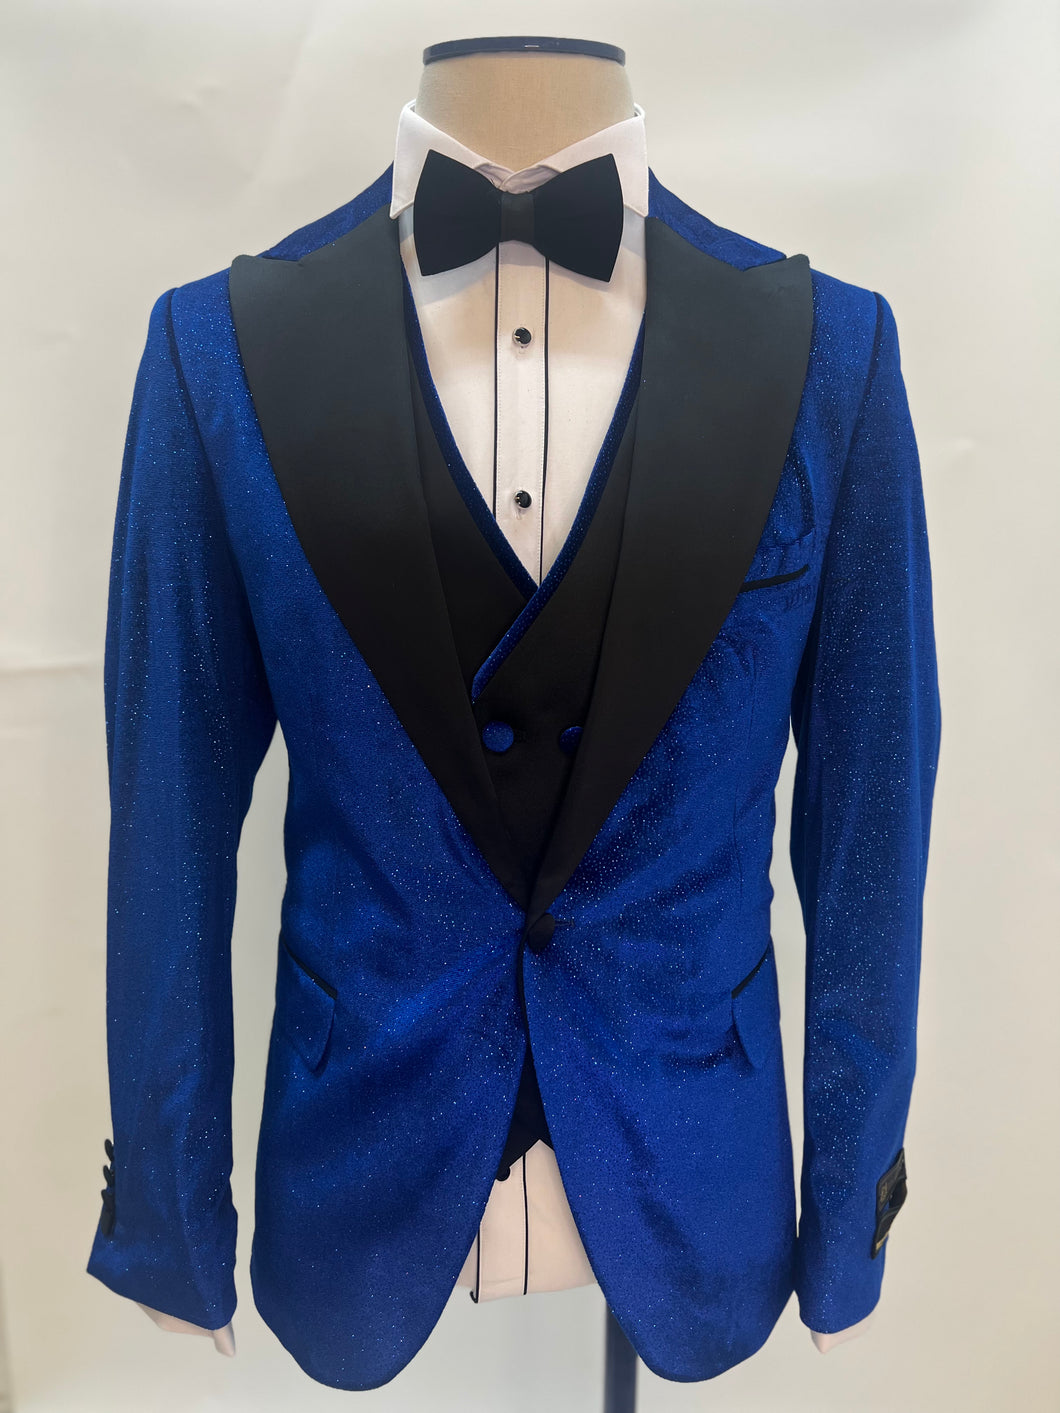 Ultramarine Blue Tuxedo